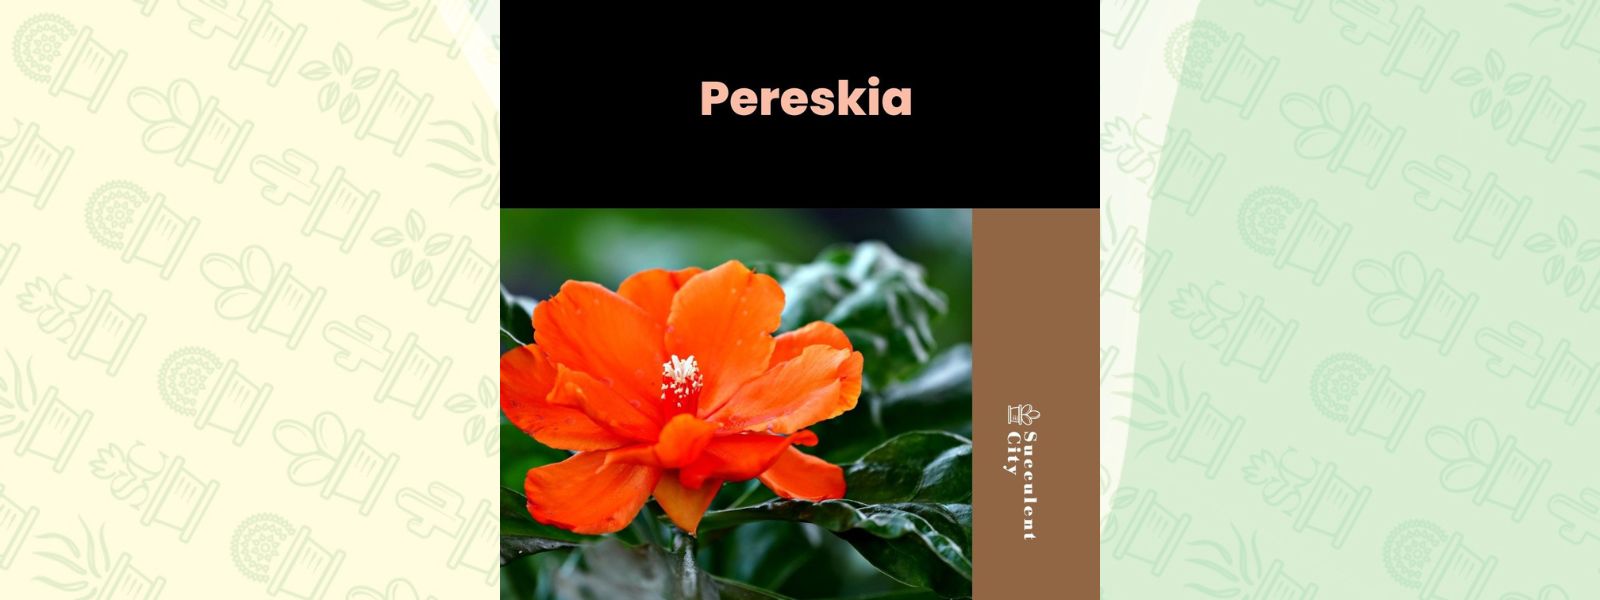 Género “Pereskia”.